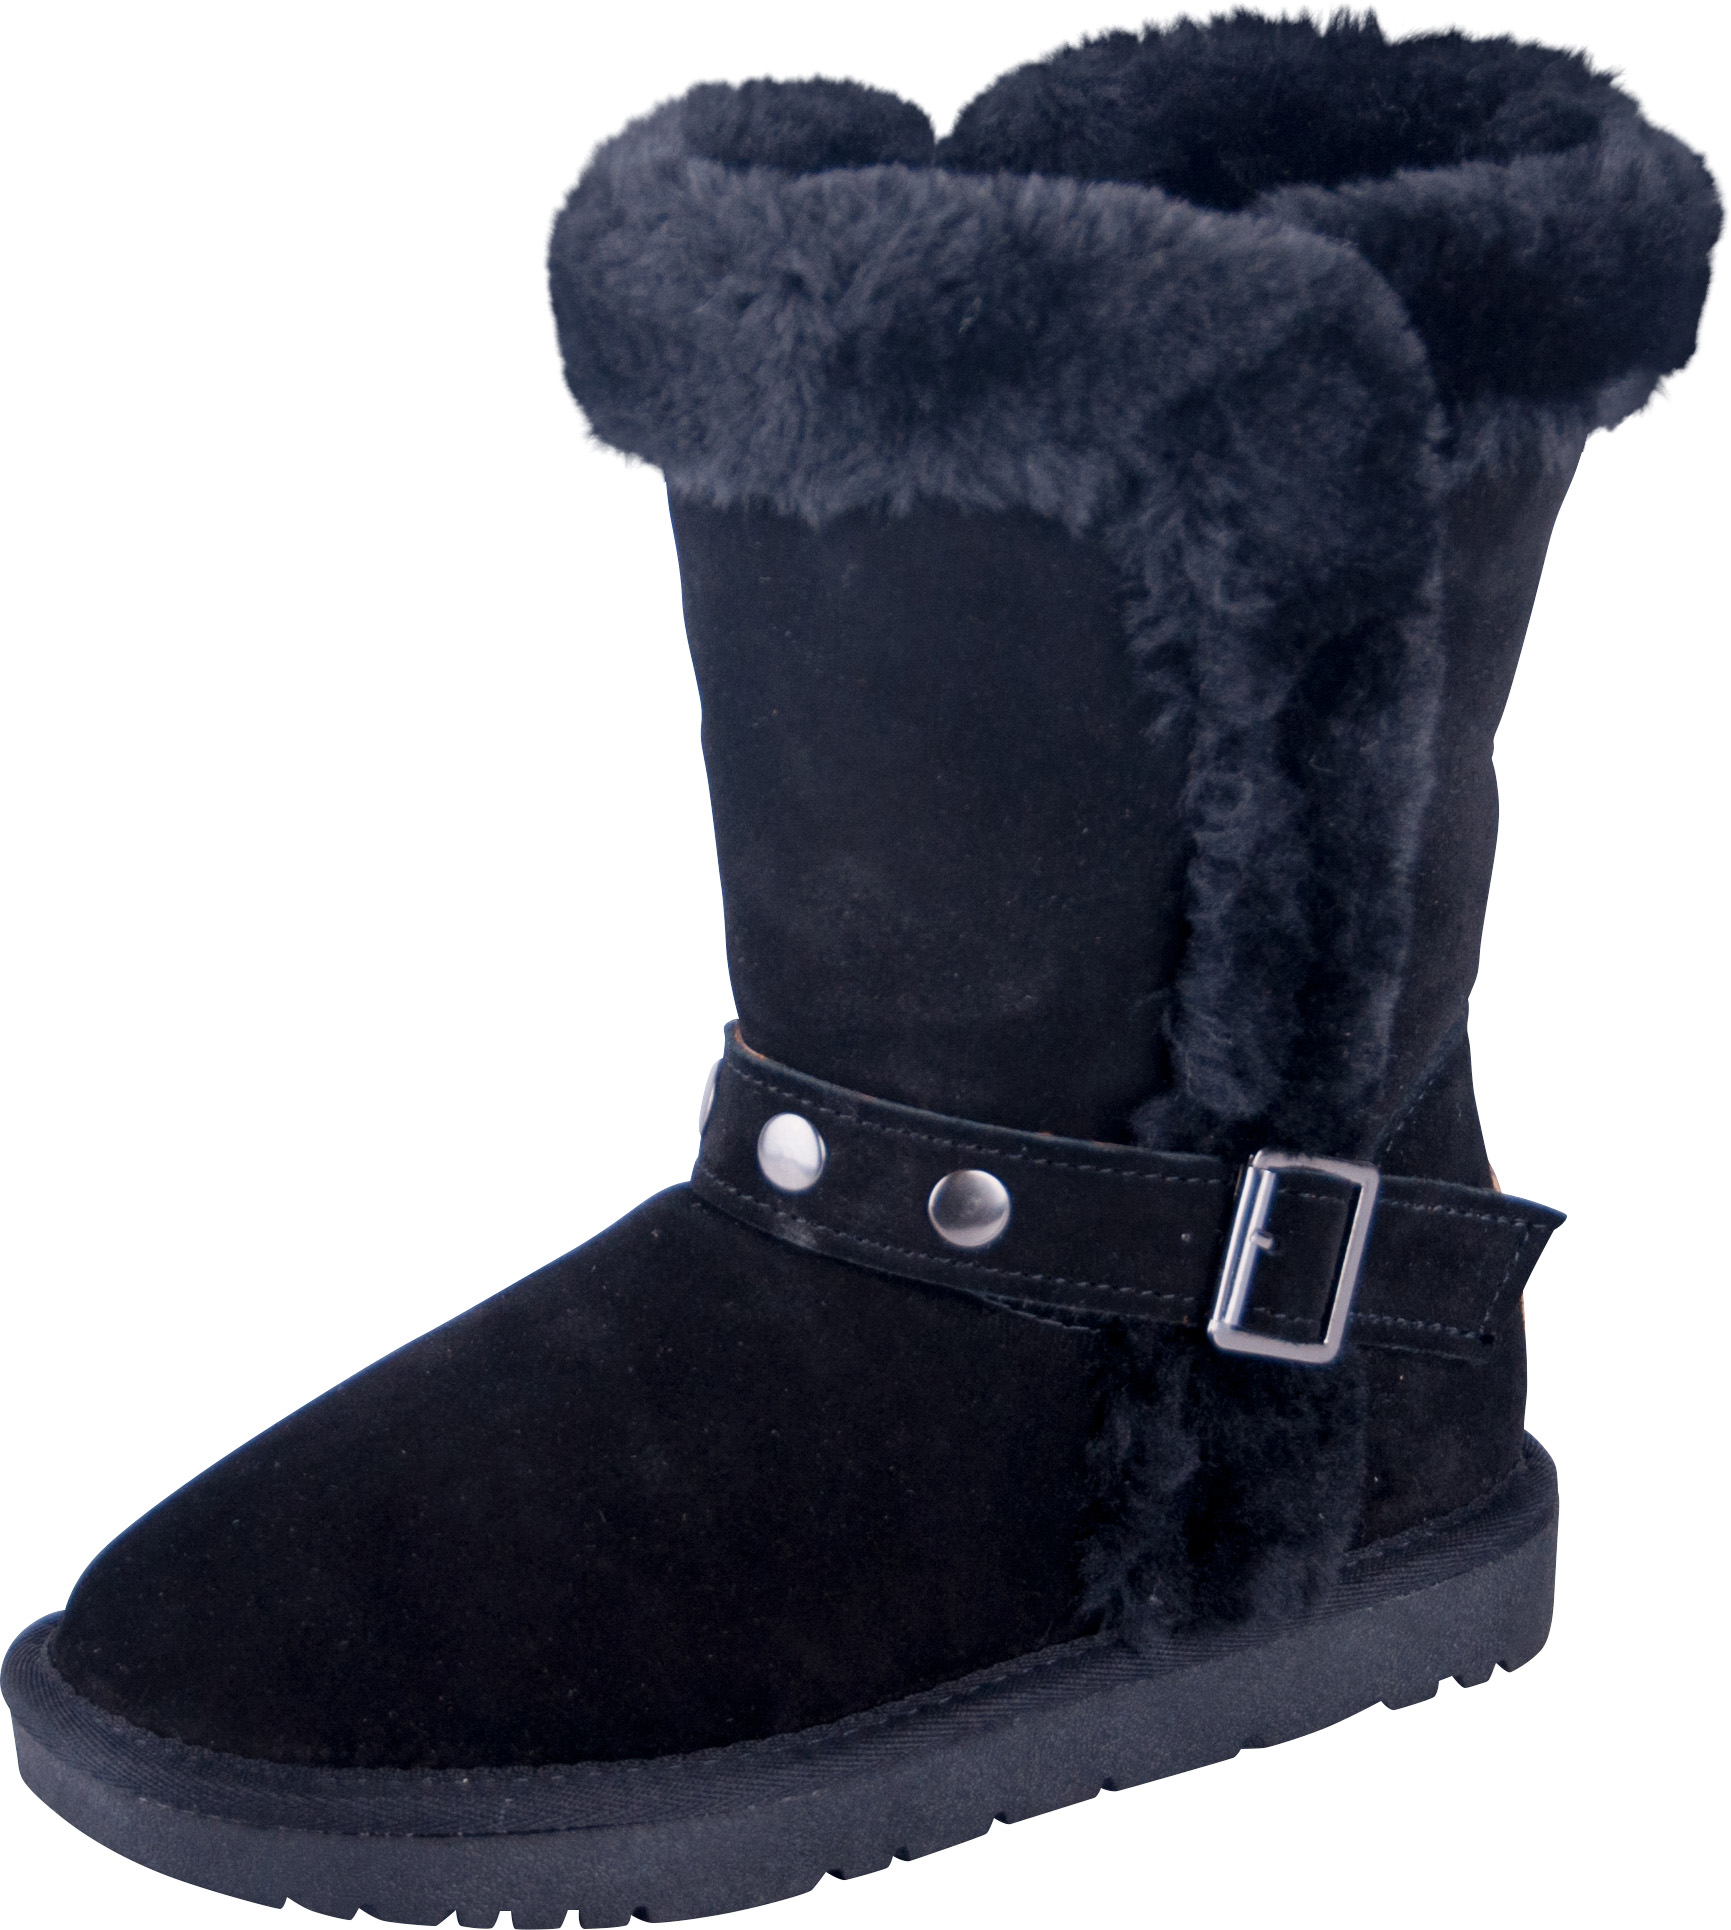 Almwelt Damen Winter Stiefel Boots Schlupf Stiefel Aus Echtleder Warm Gefuttert In Verscheidenen Farben Almwelt